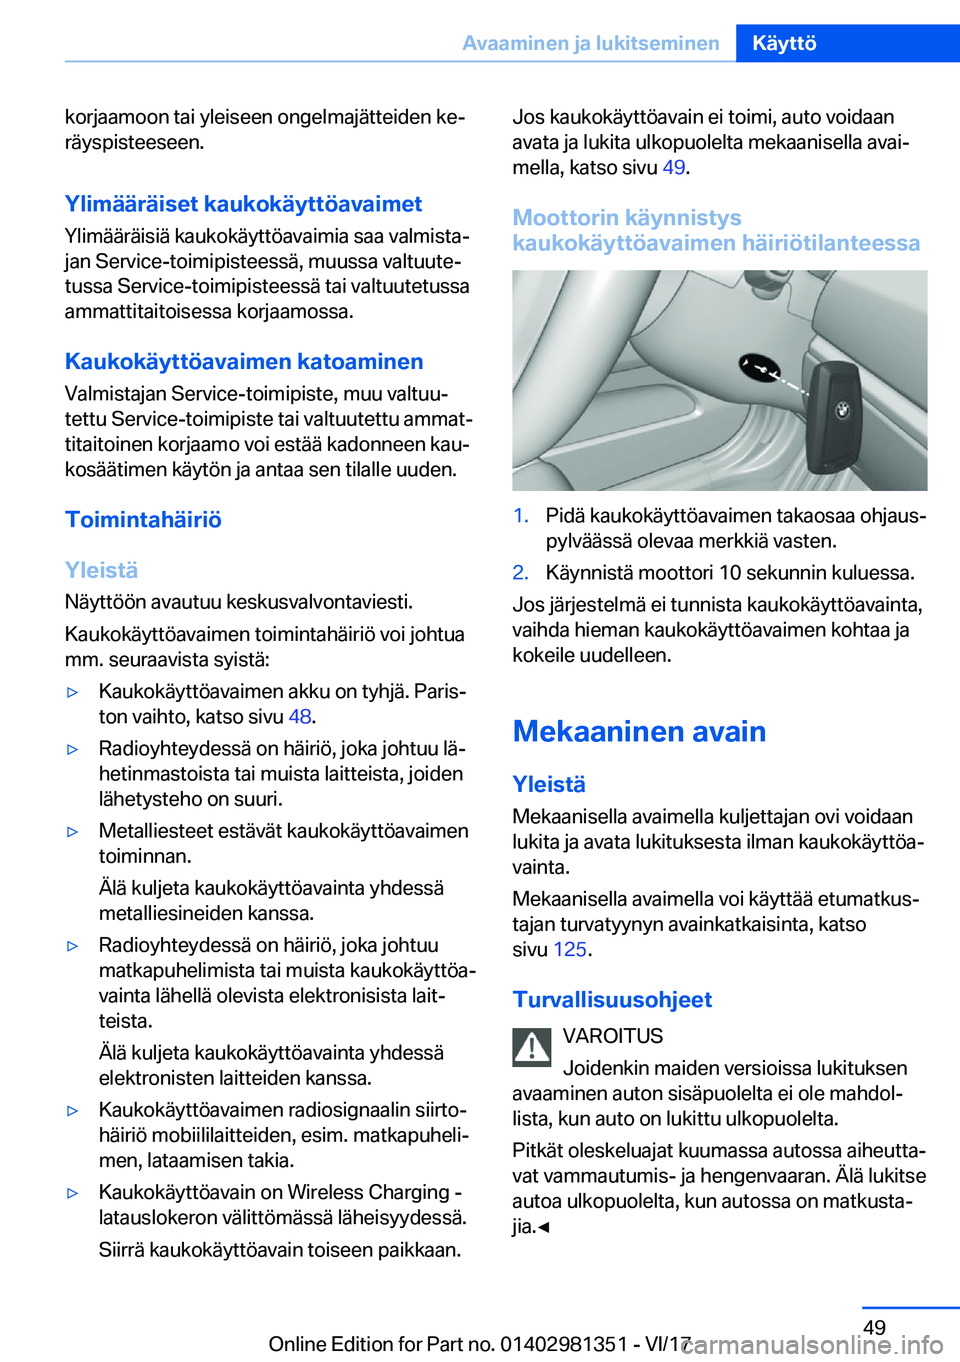 BMW X4 2018  Omistajan Käsikirja (in Finnish) �k�o�r�j�a�a�m�o�o�n� �t�a�i� �y�l�e�i�s�e�e�n� �o�n�g�e�l�m�a�j�